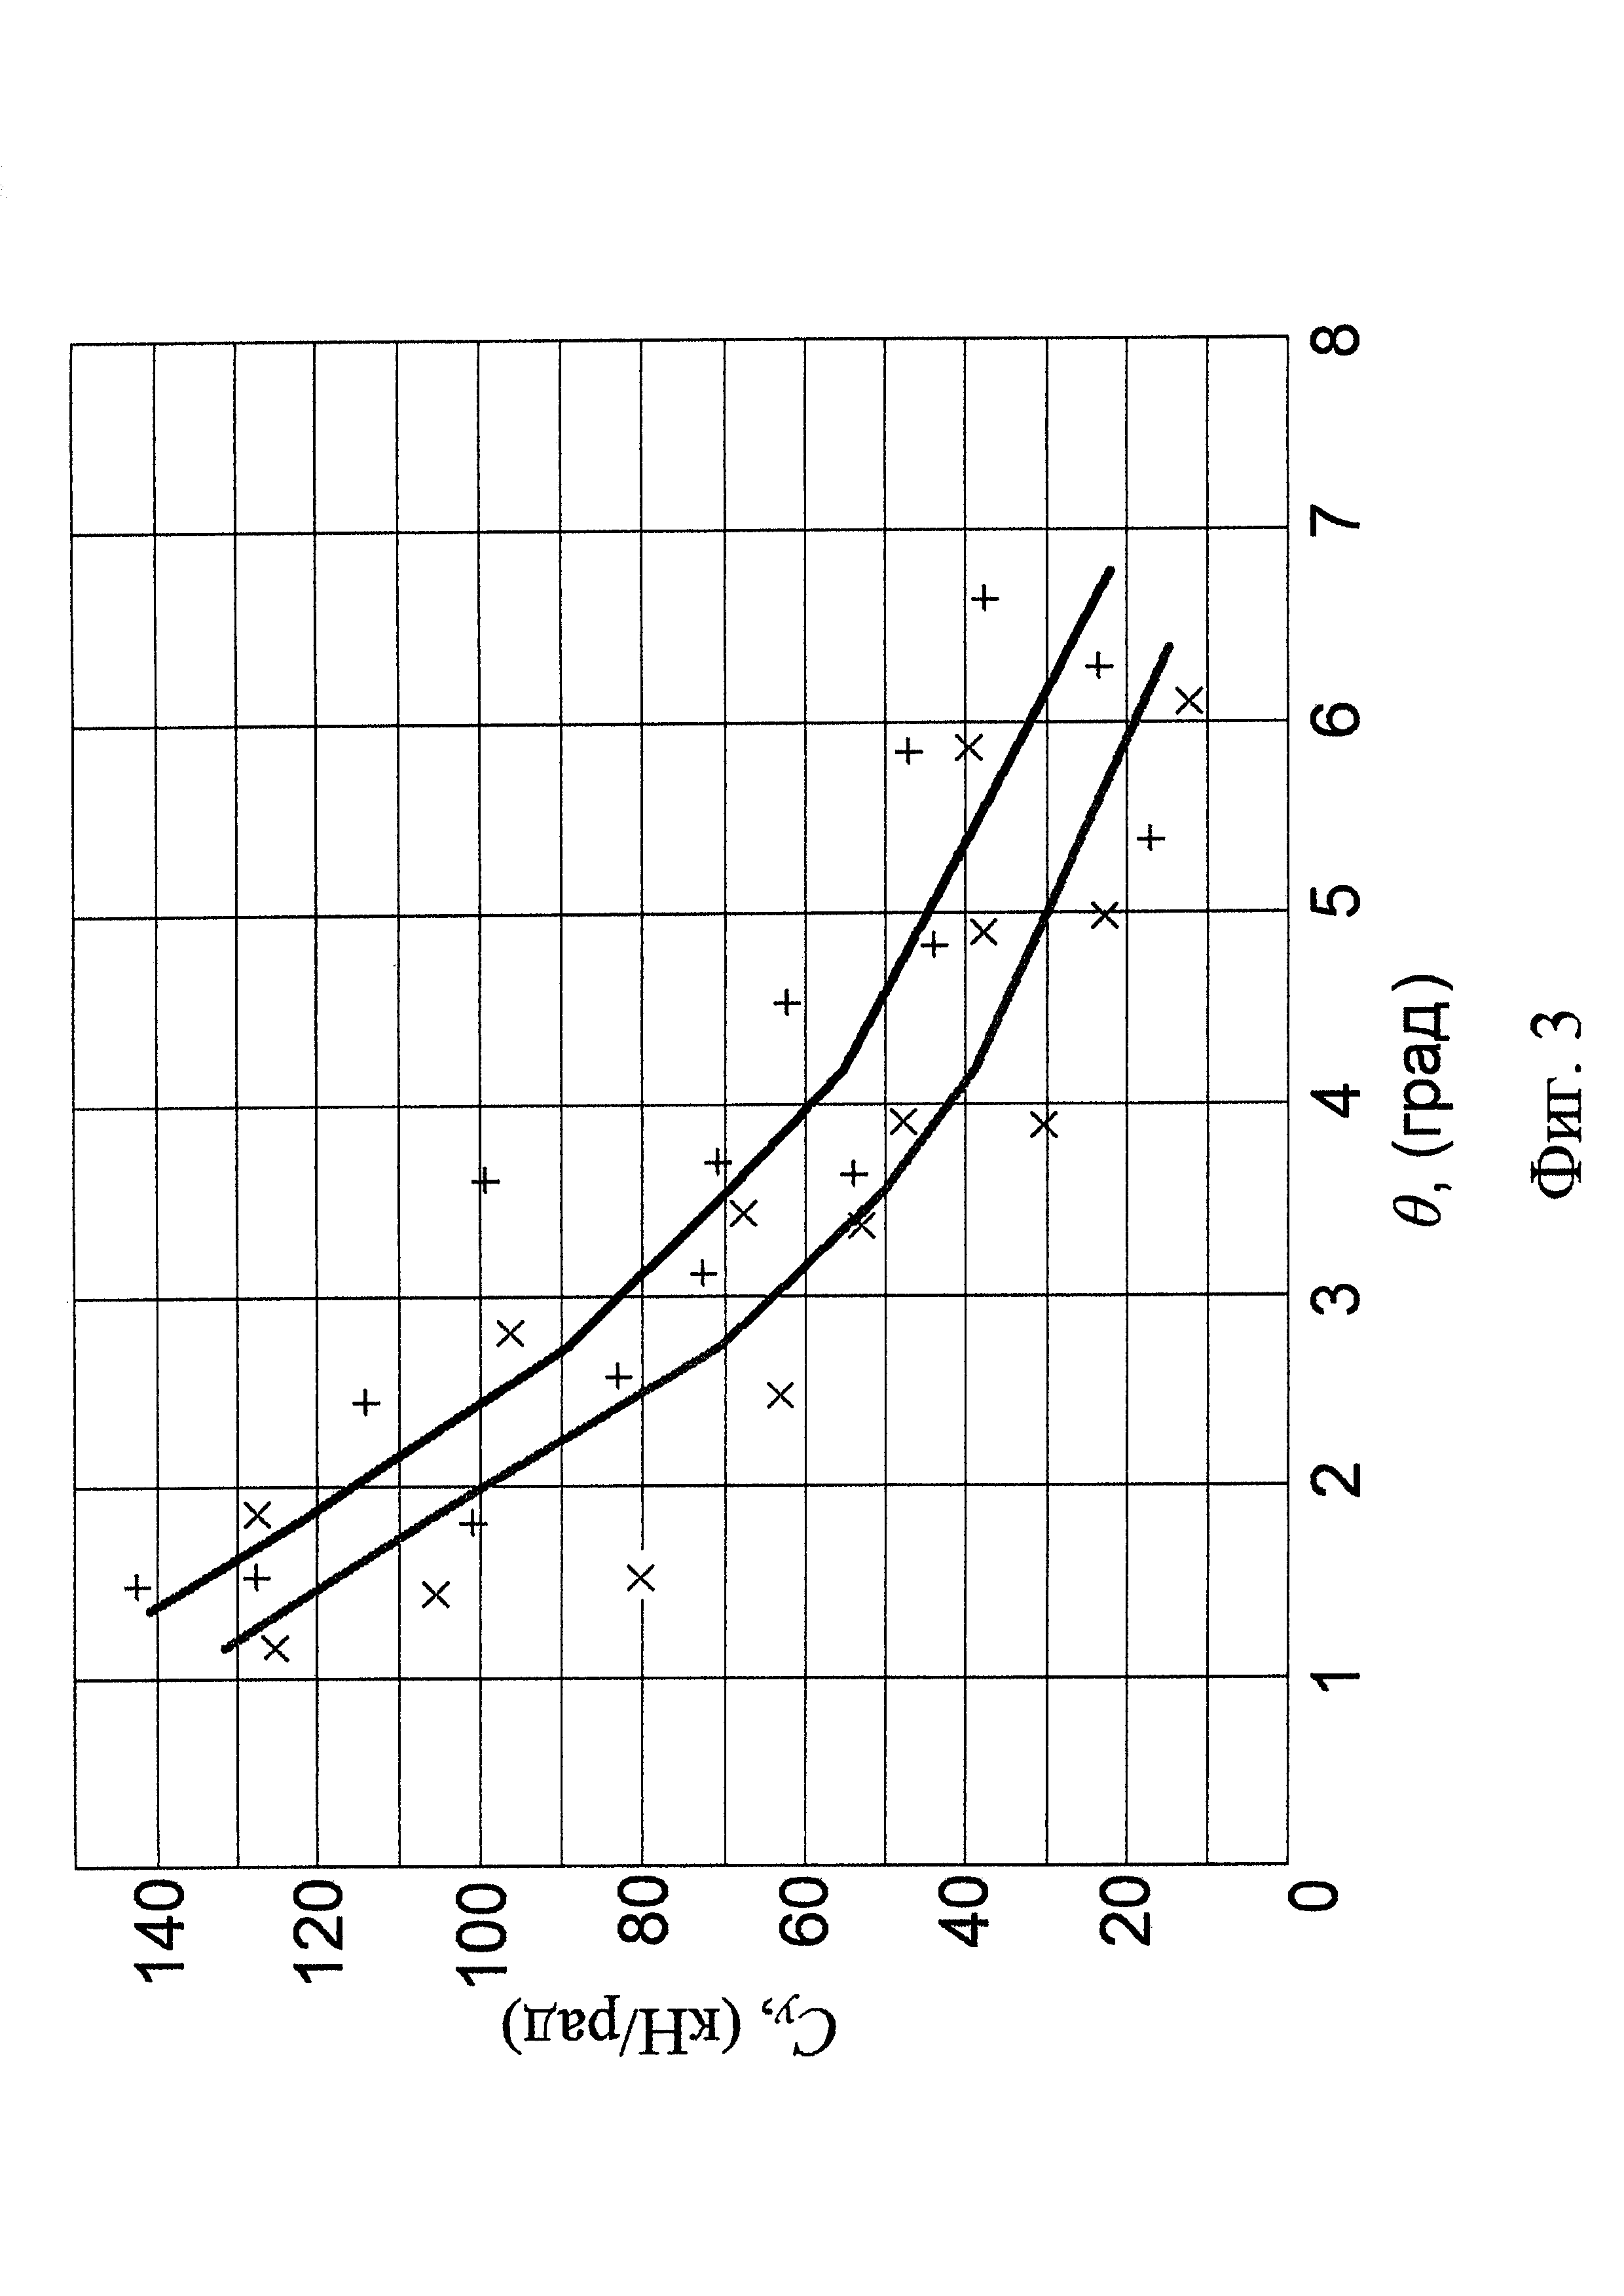 Система дистанционного телеметрического измерения коэффициента сопротивления уводу шин опорных катков гусеничных машин